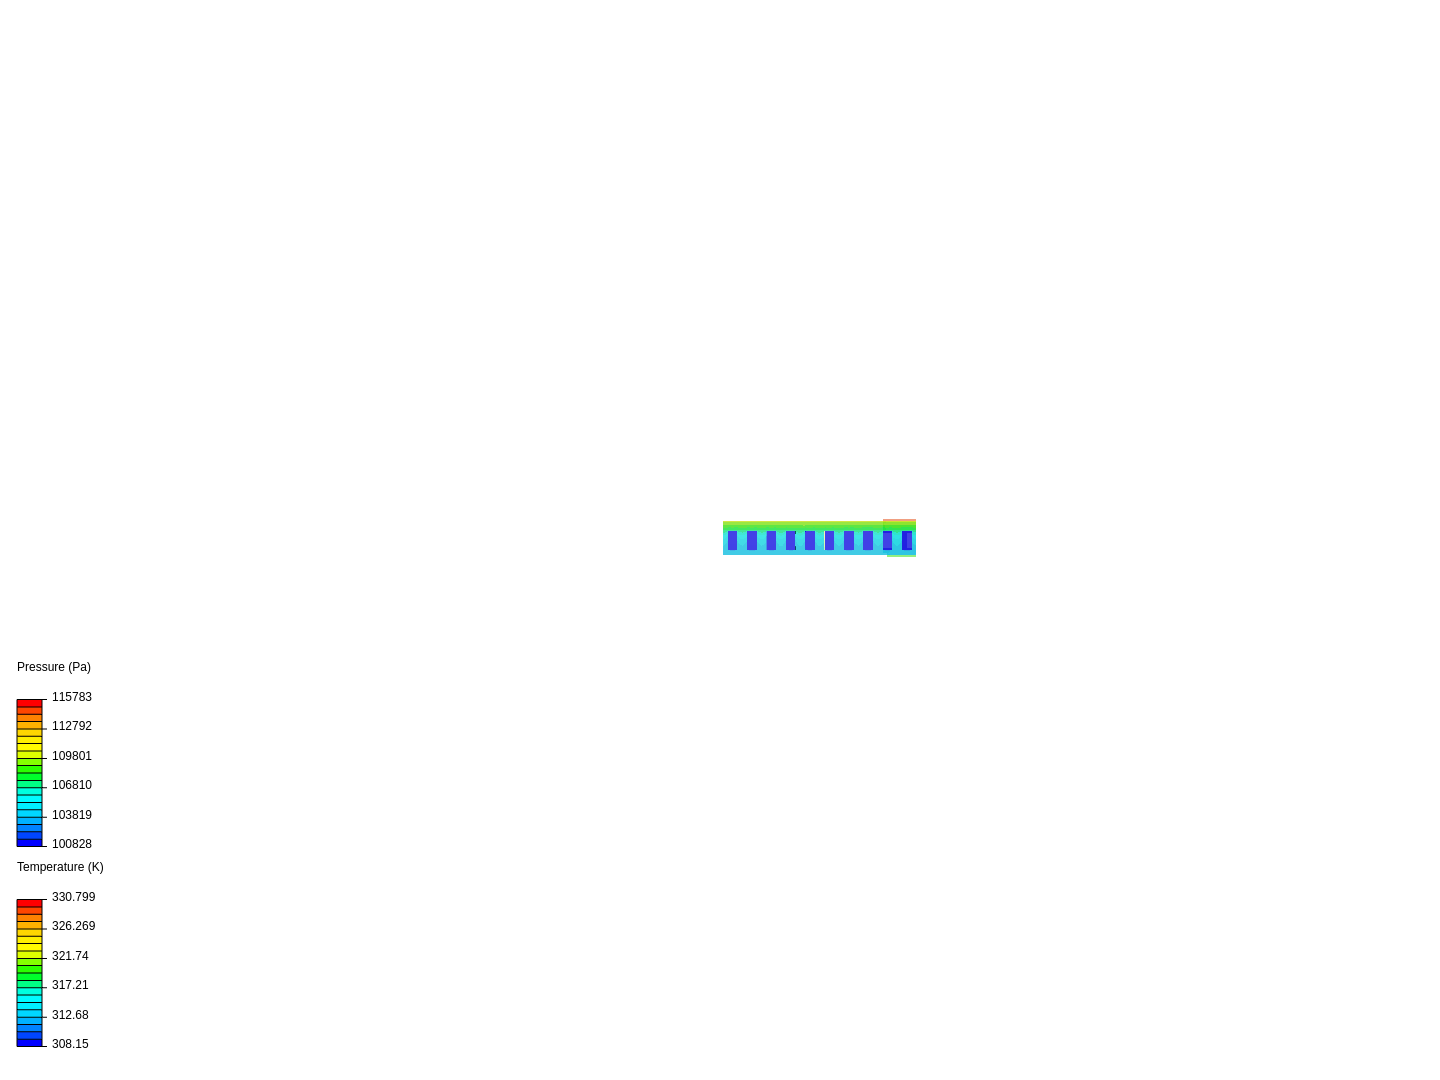 Parallel flow configuration, 35C image